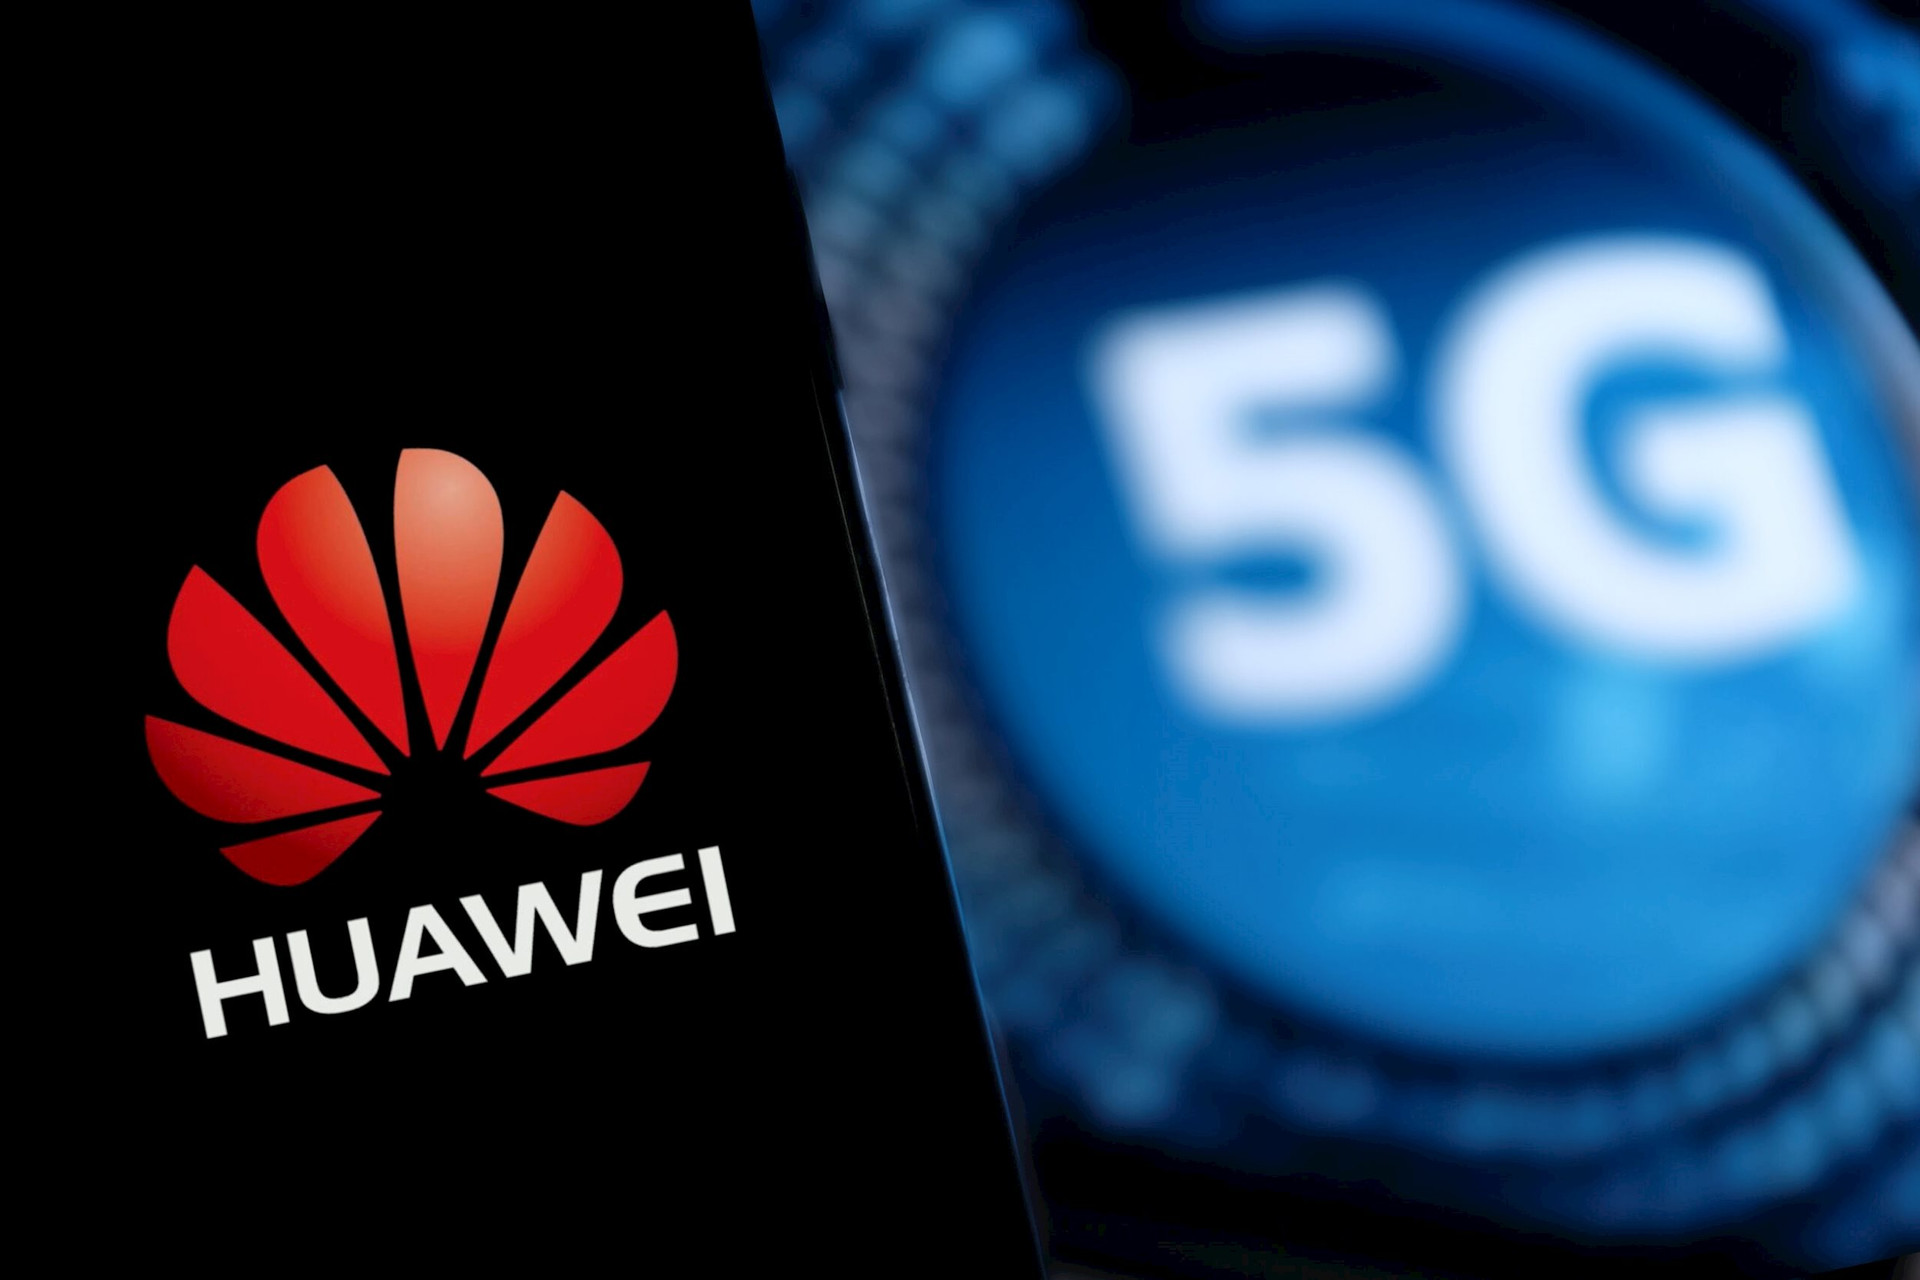 5G có thể không còn đáp ứng được yêu cầu của thế giới, đây là lý do Huawei đã sớm ‘tất tay’ cho công nghệ còn đẳng cấp hơn - Ảnh 1.